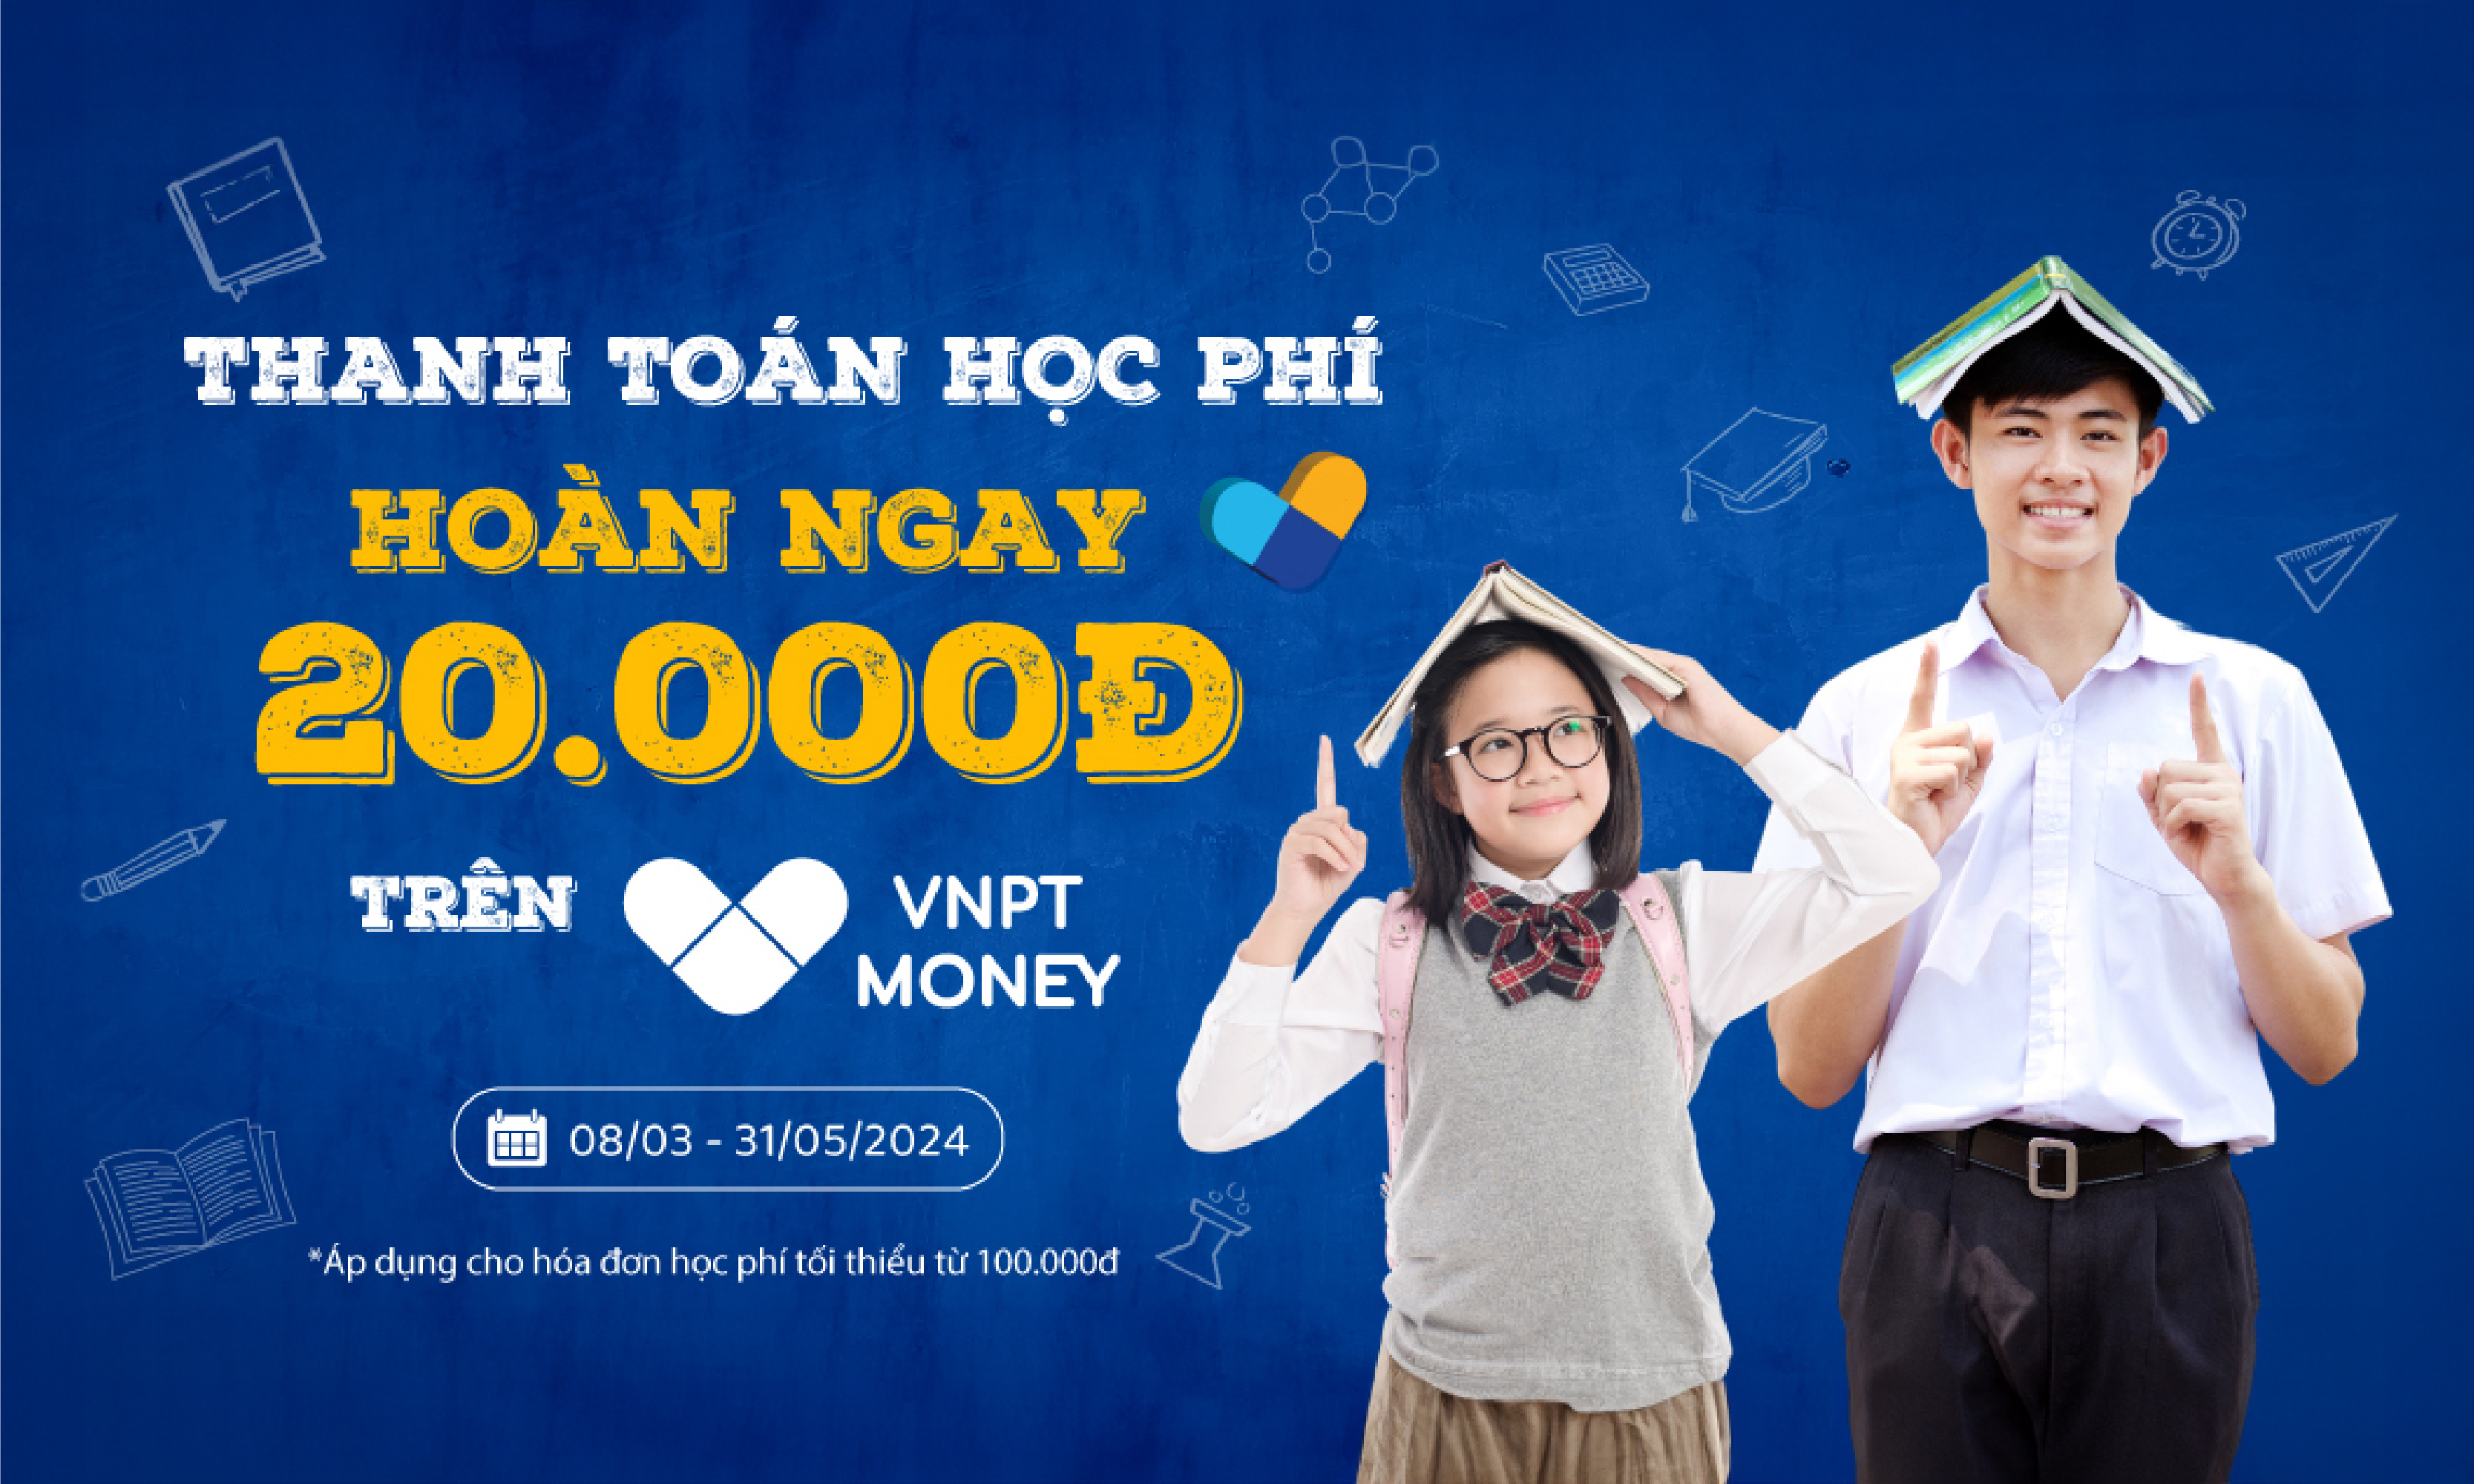 Nộp học phí nhanh và tiện qua VNPT Money, nhận ngay ưu đãi hoàn 20.000đ